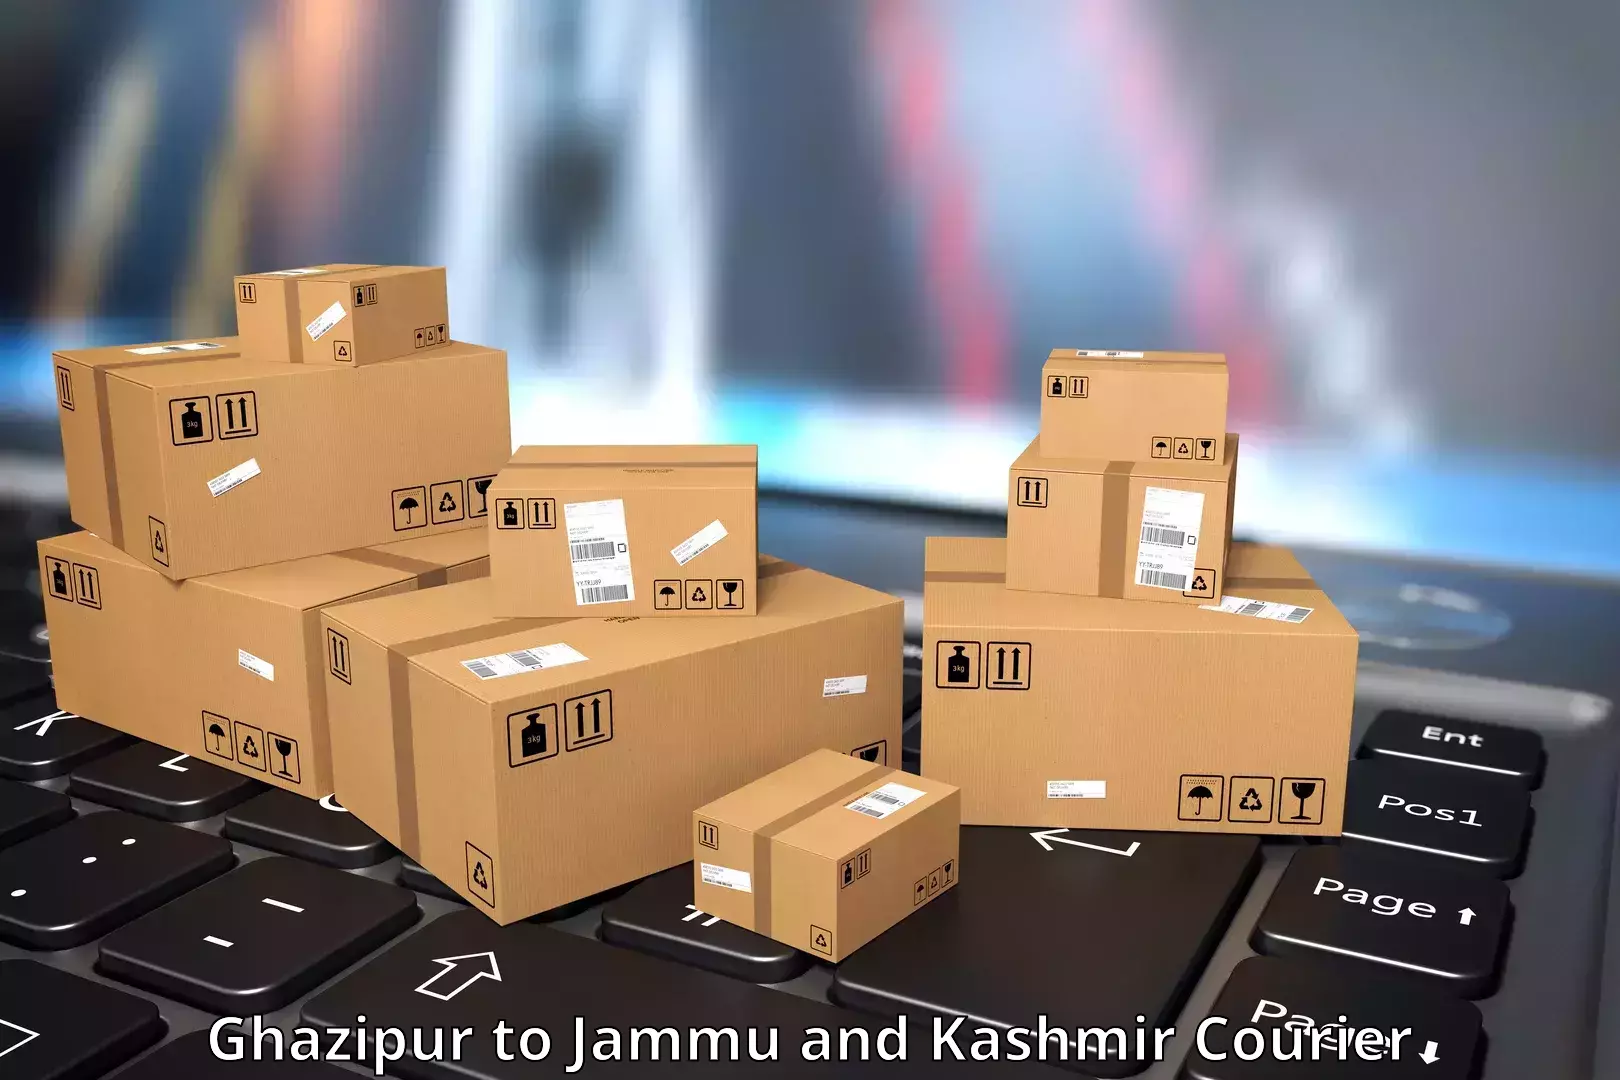 Express package handling Ghazipur to Leh